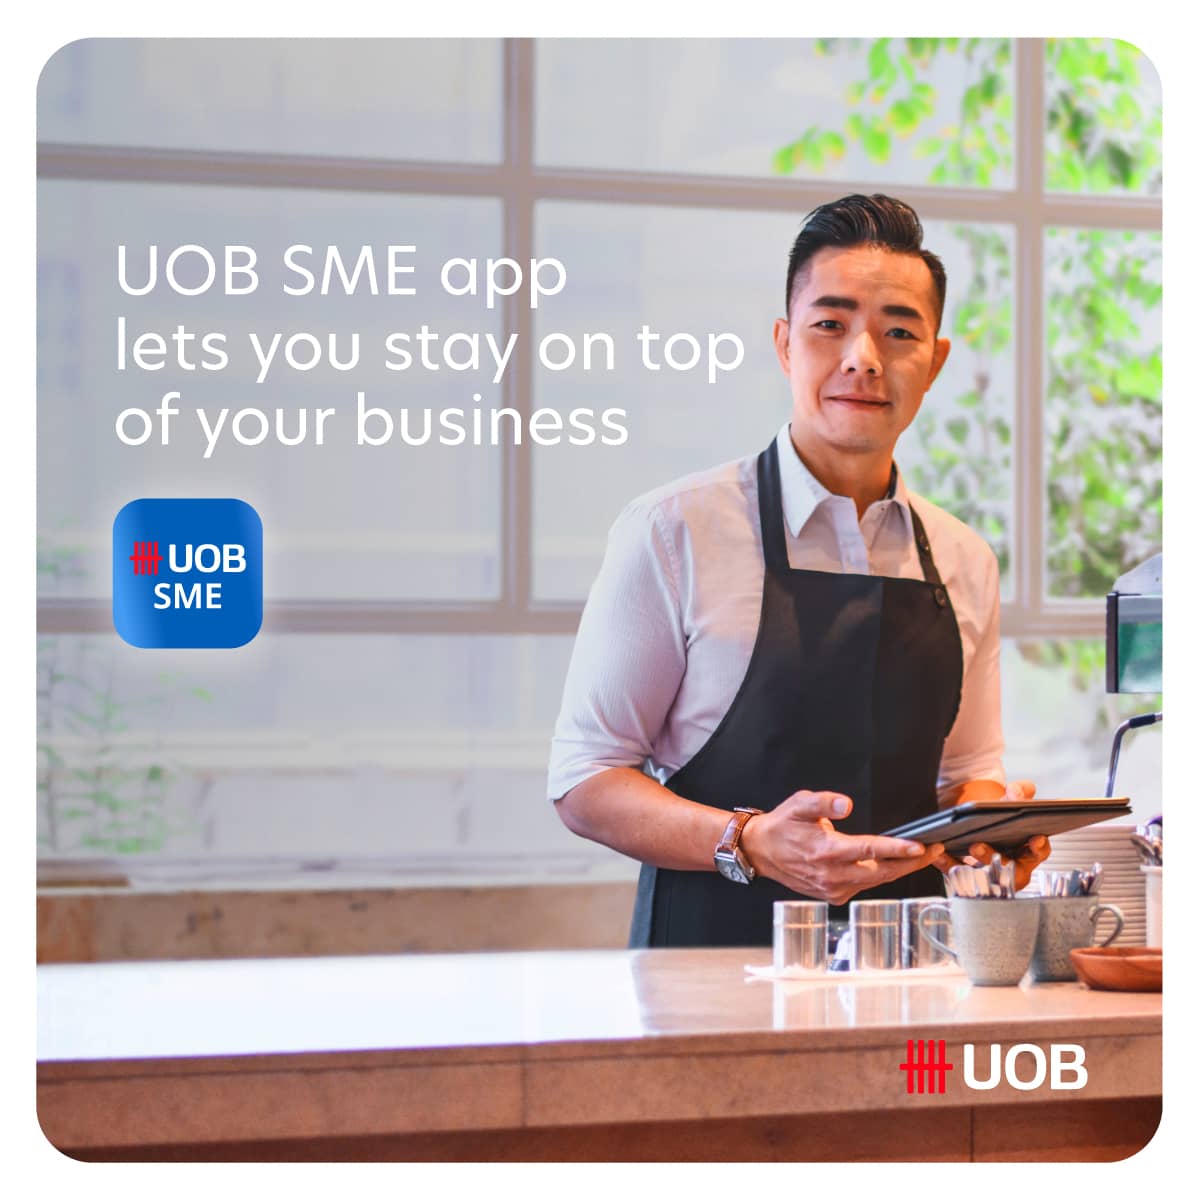 UOB SME app